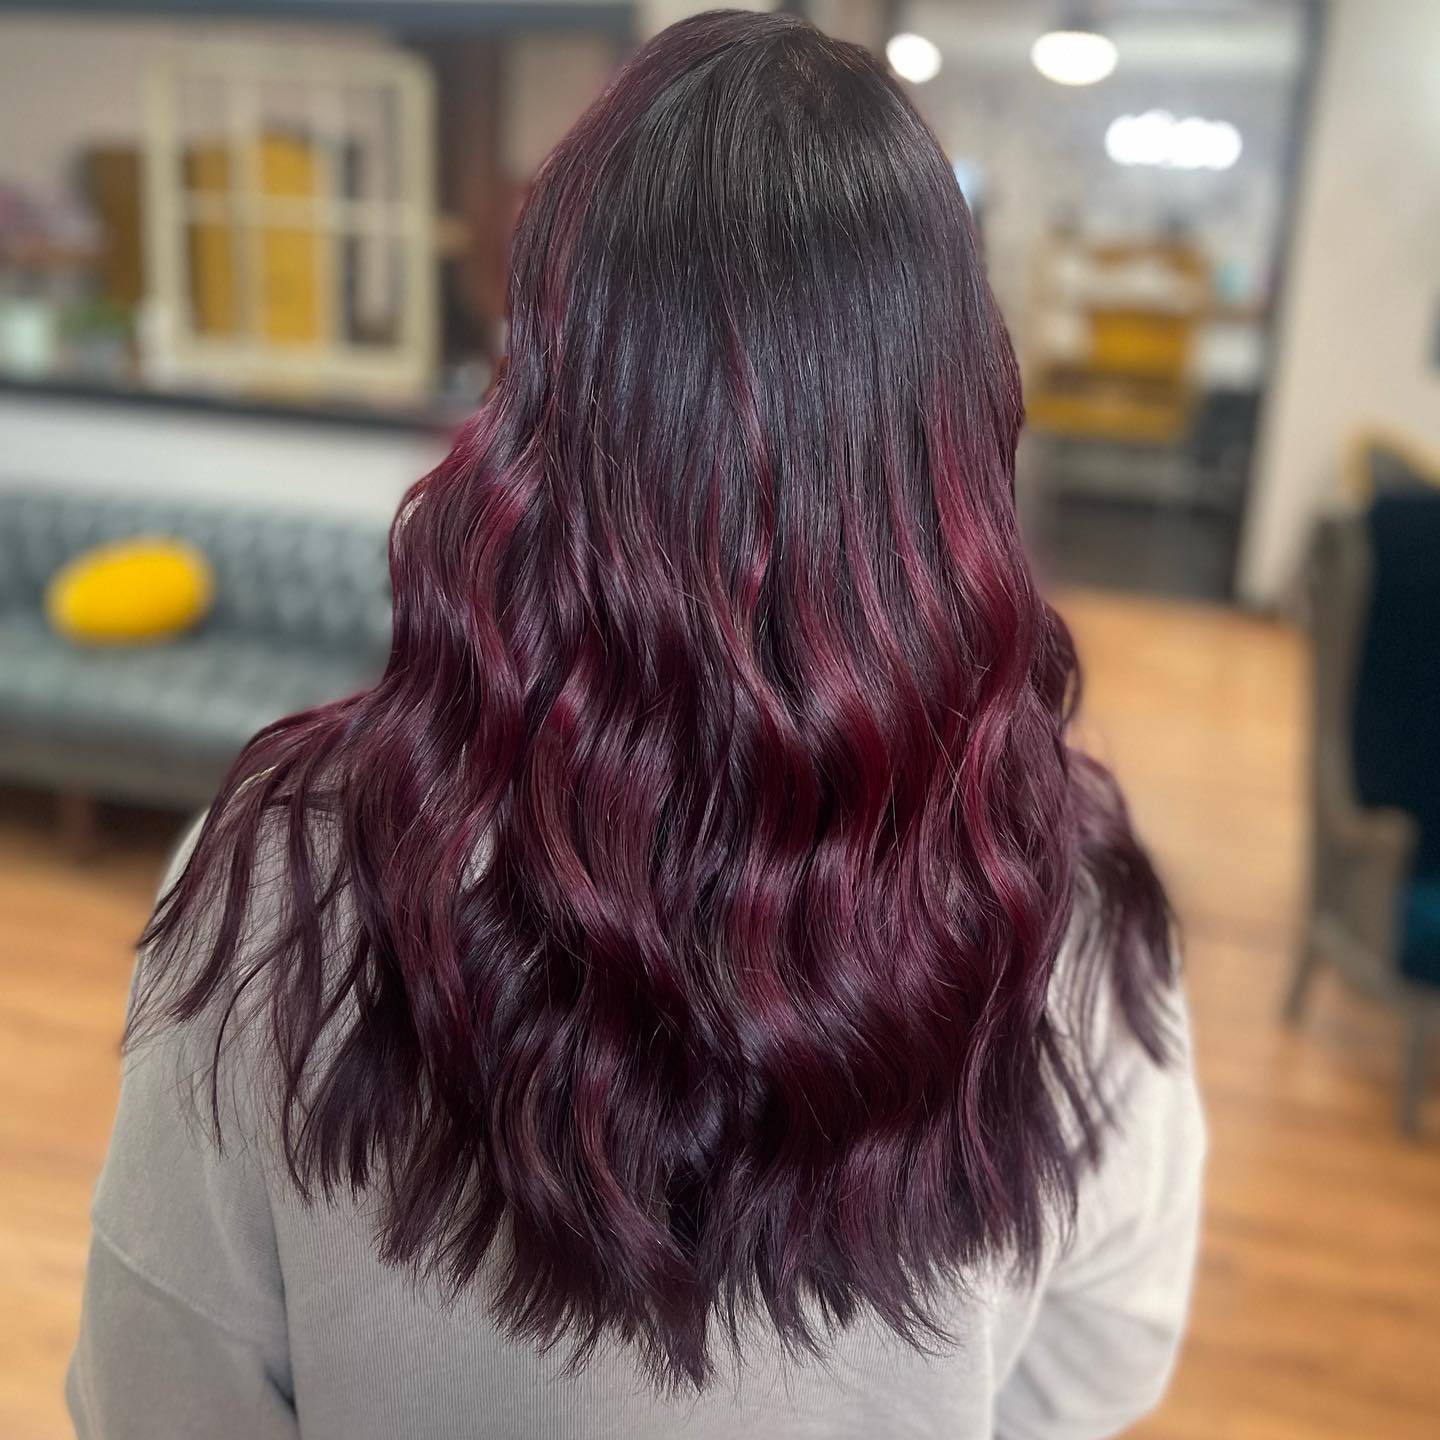 Burgundy hair color 373 burgundy hair color | burgundy hair color for women | burgundy hair color highlights Burgundy Hair Color